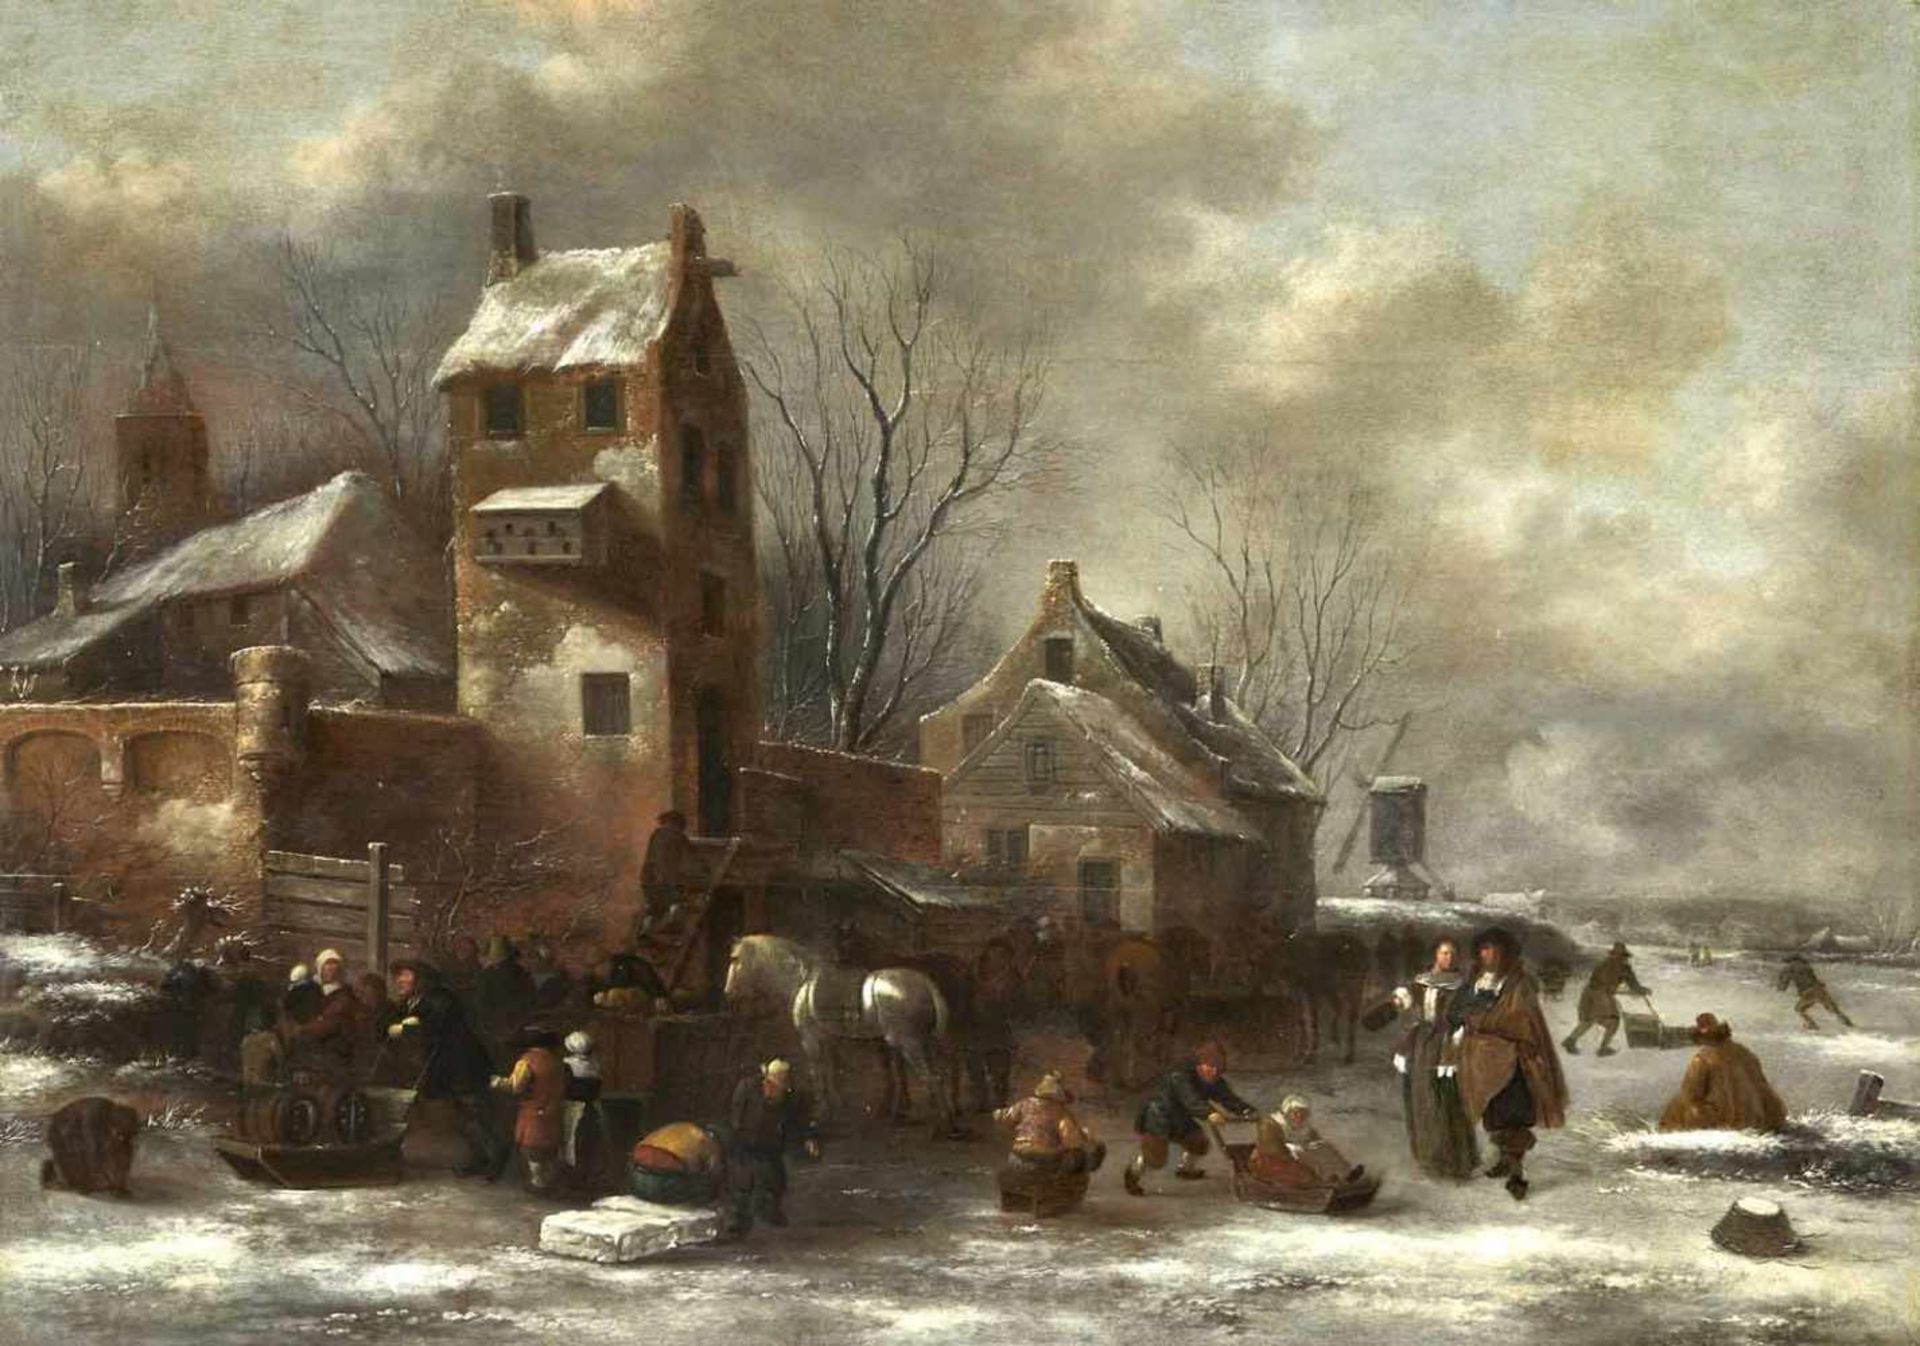 Molenaer, KlaesHaarlem um 1630 - 167658 x 82 cmFröhliche Dorfgemeinschaft auf einem zugefrorenen